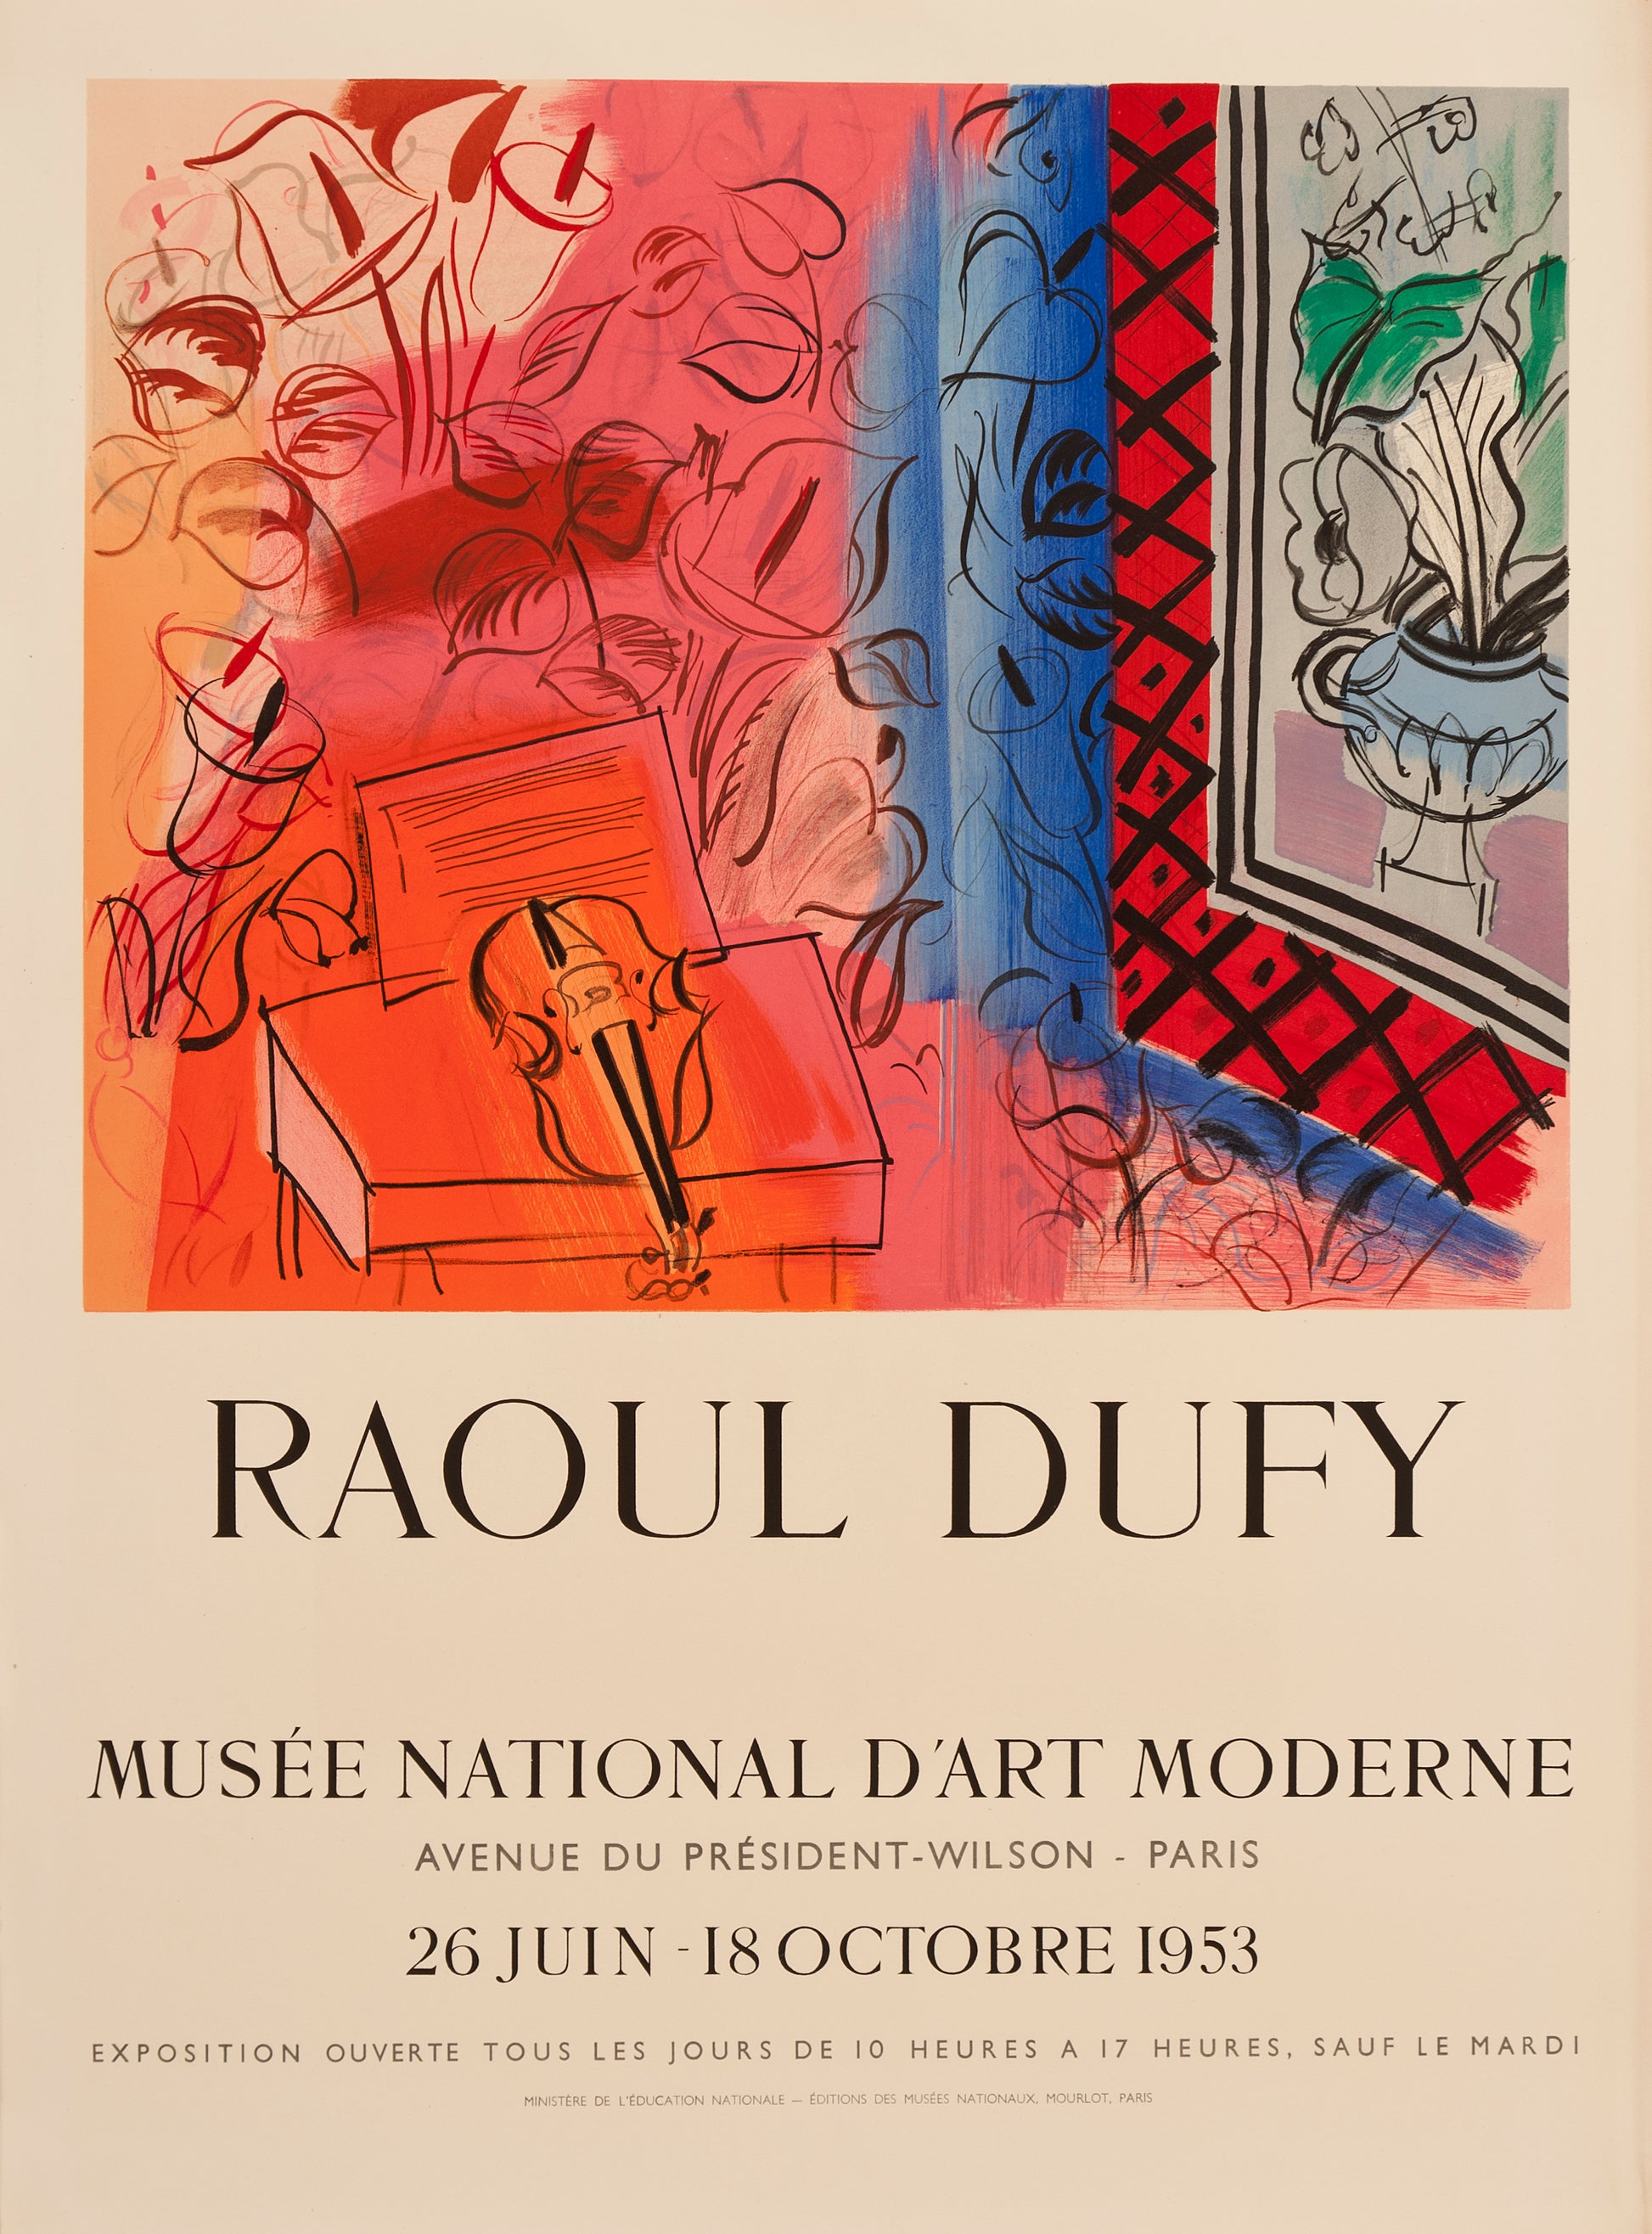 Intérieur au Violon - Musée National D'Art Moderne (after) Raoul Dufy, 1953 - Mourlot Editions - Fine_Art - Poster - Lithograph - Wall Art - Vintage - Prints - Original